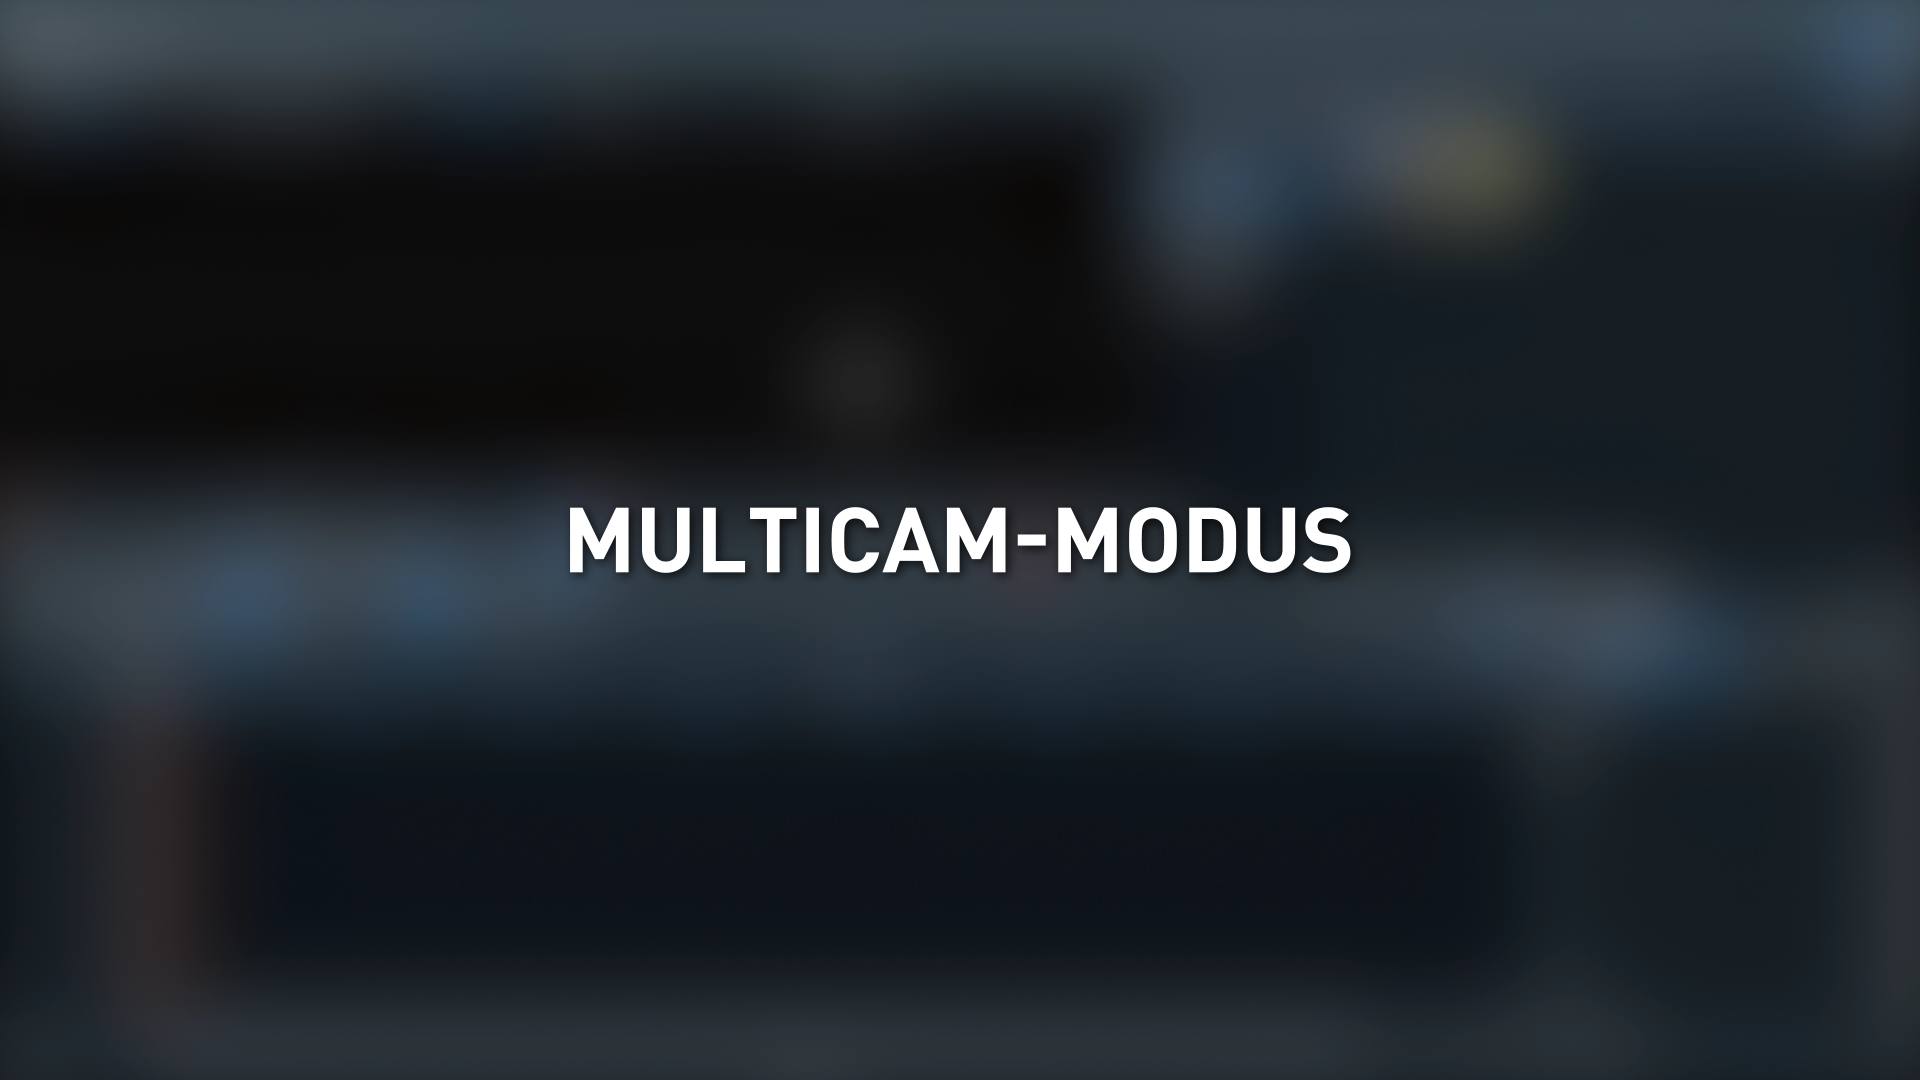 Multicam-Modus